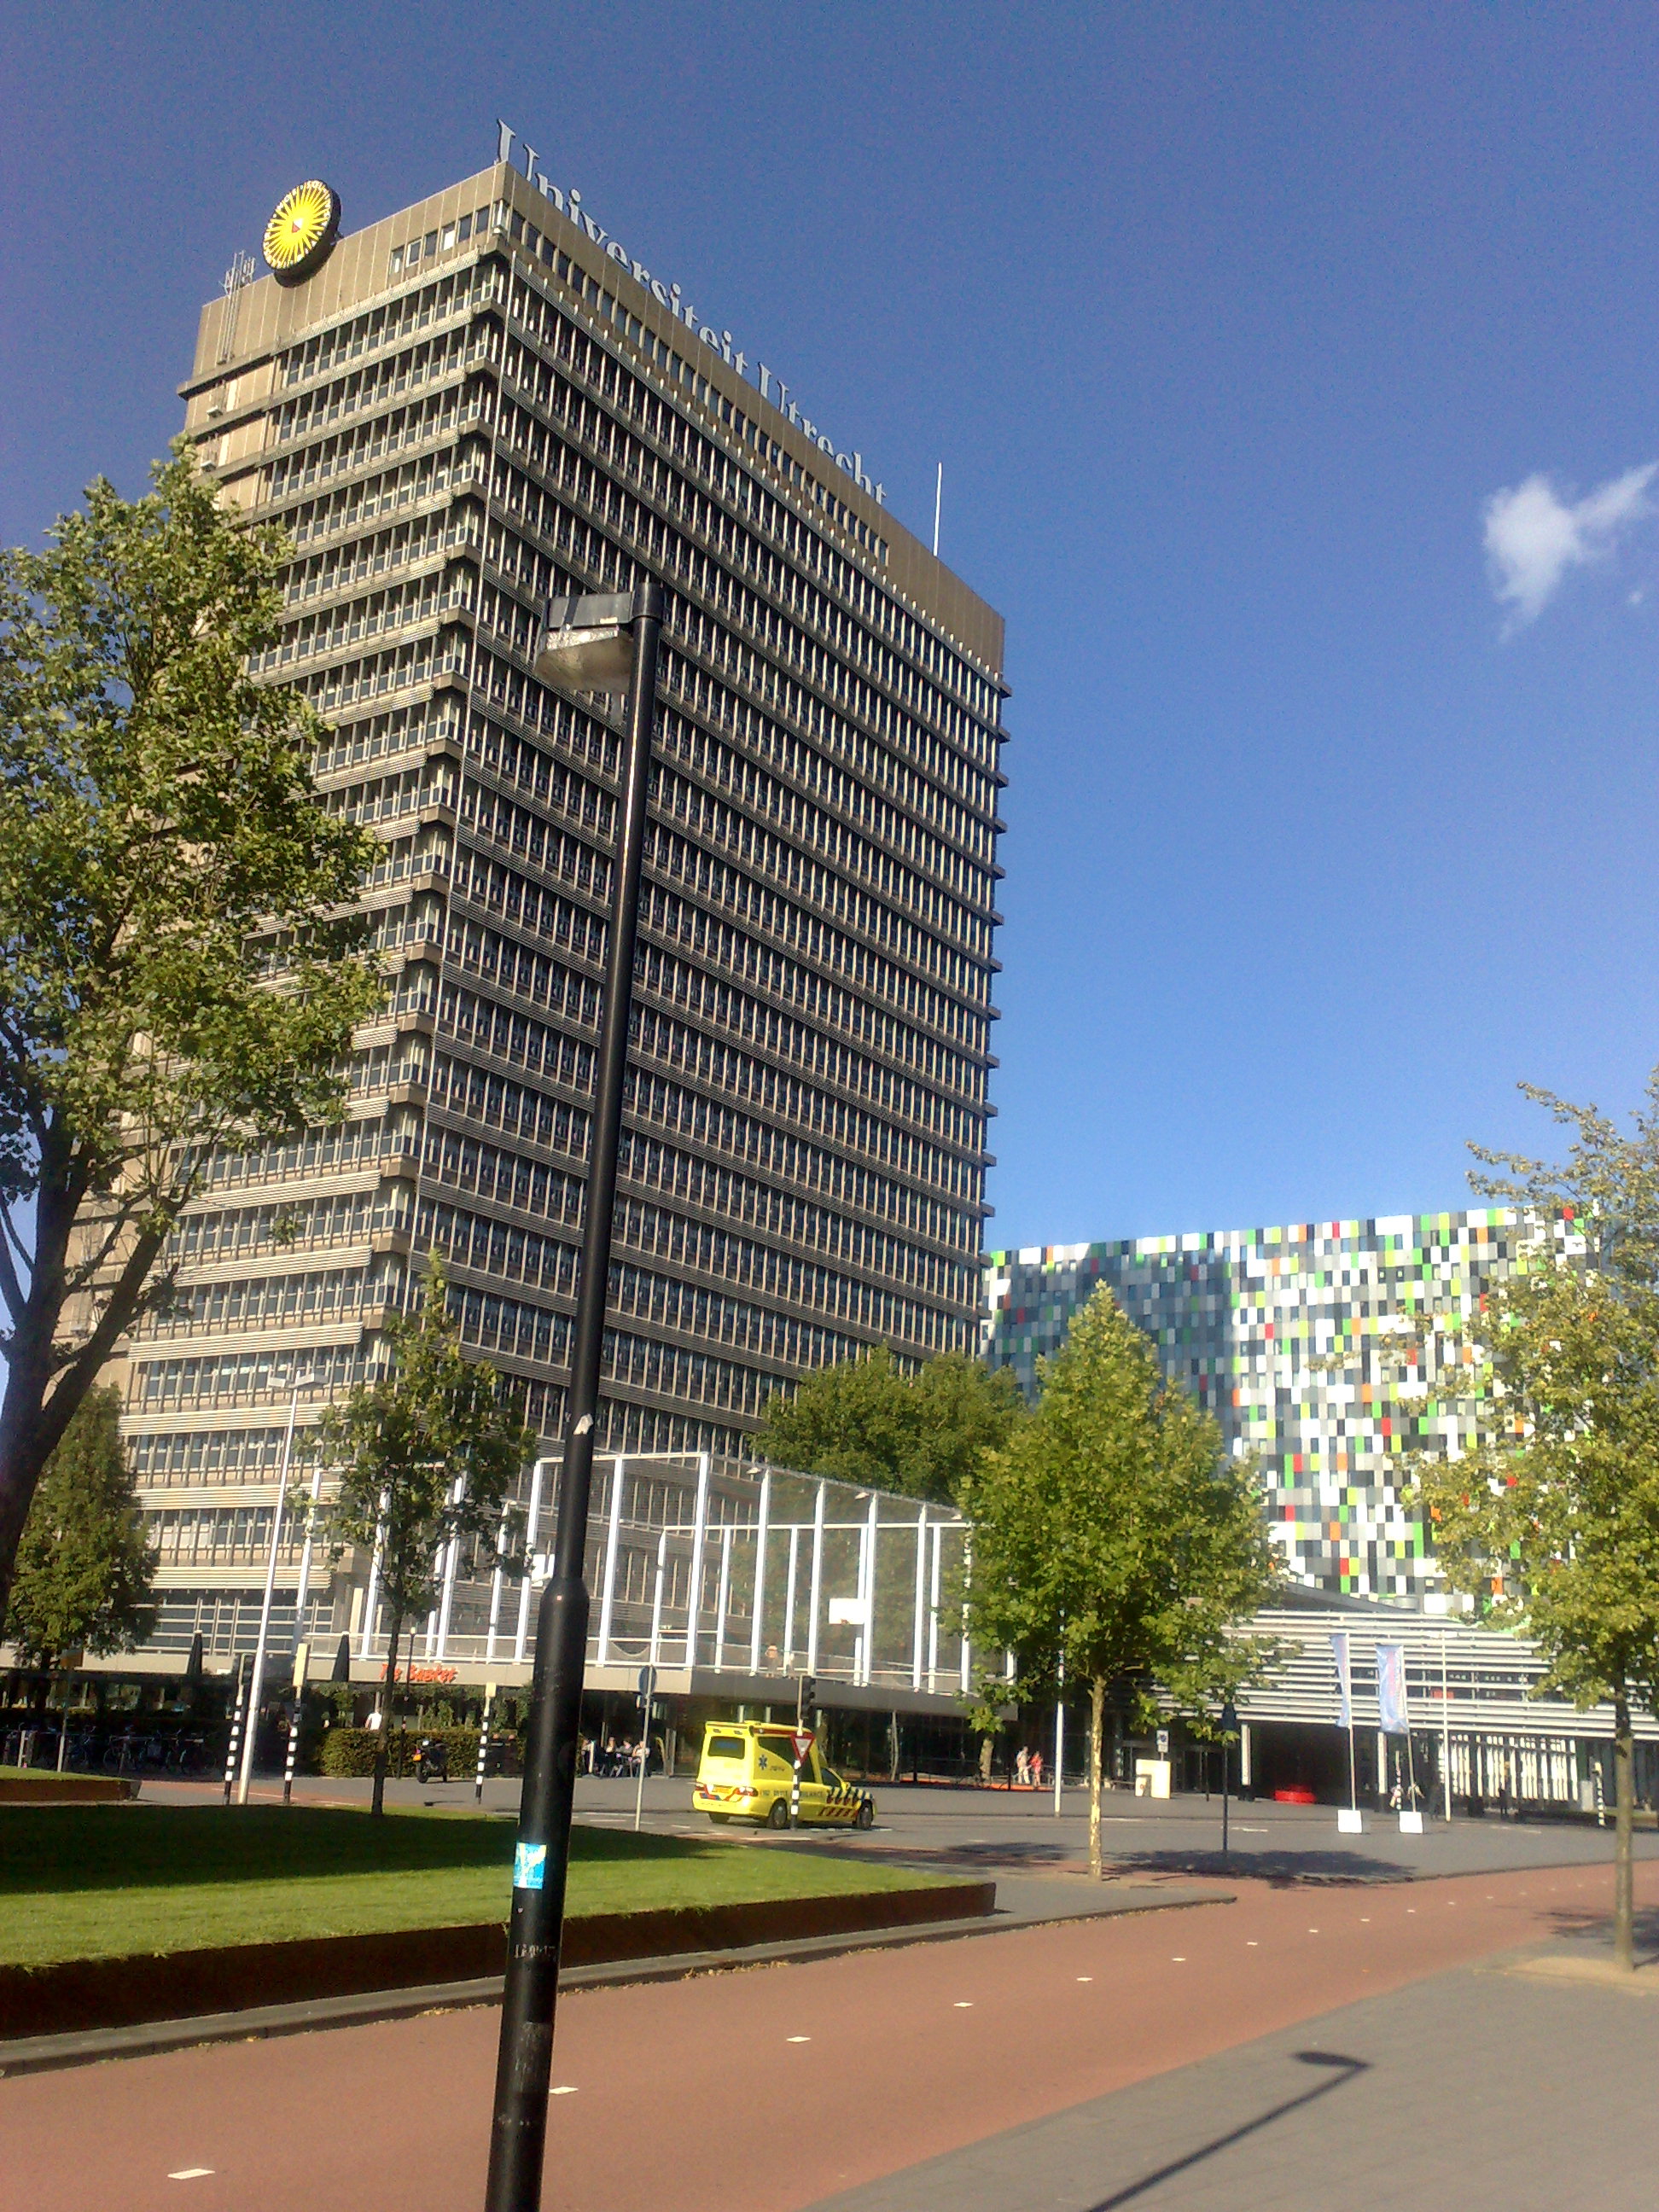 Universiteit Utrecht - campus De Uithof